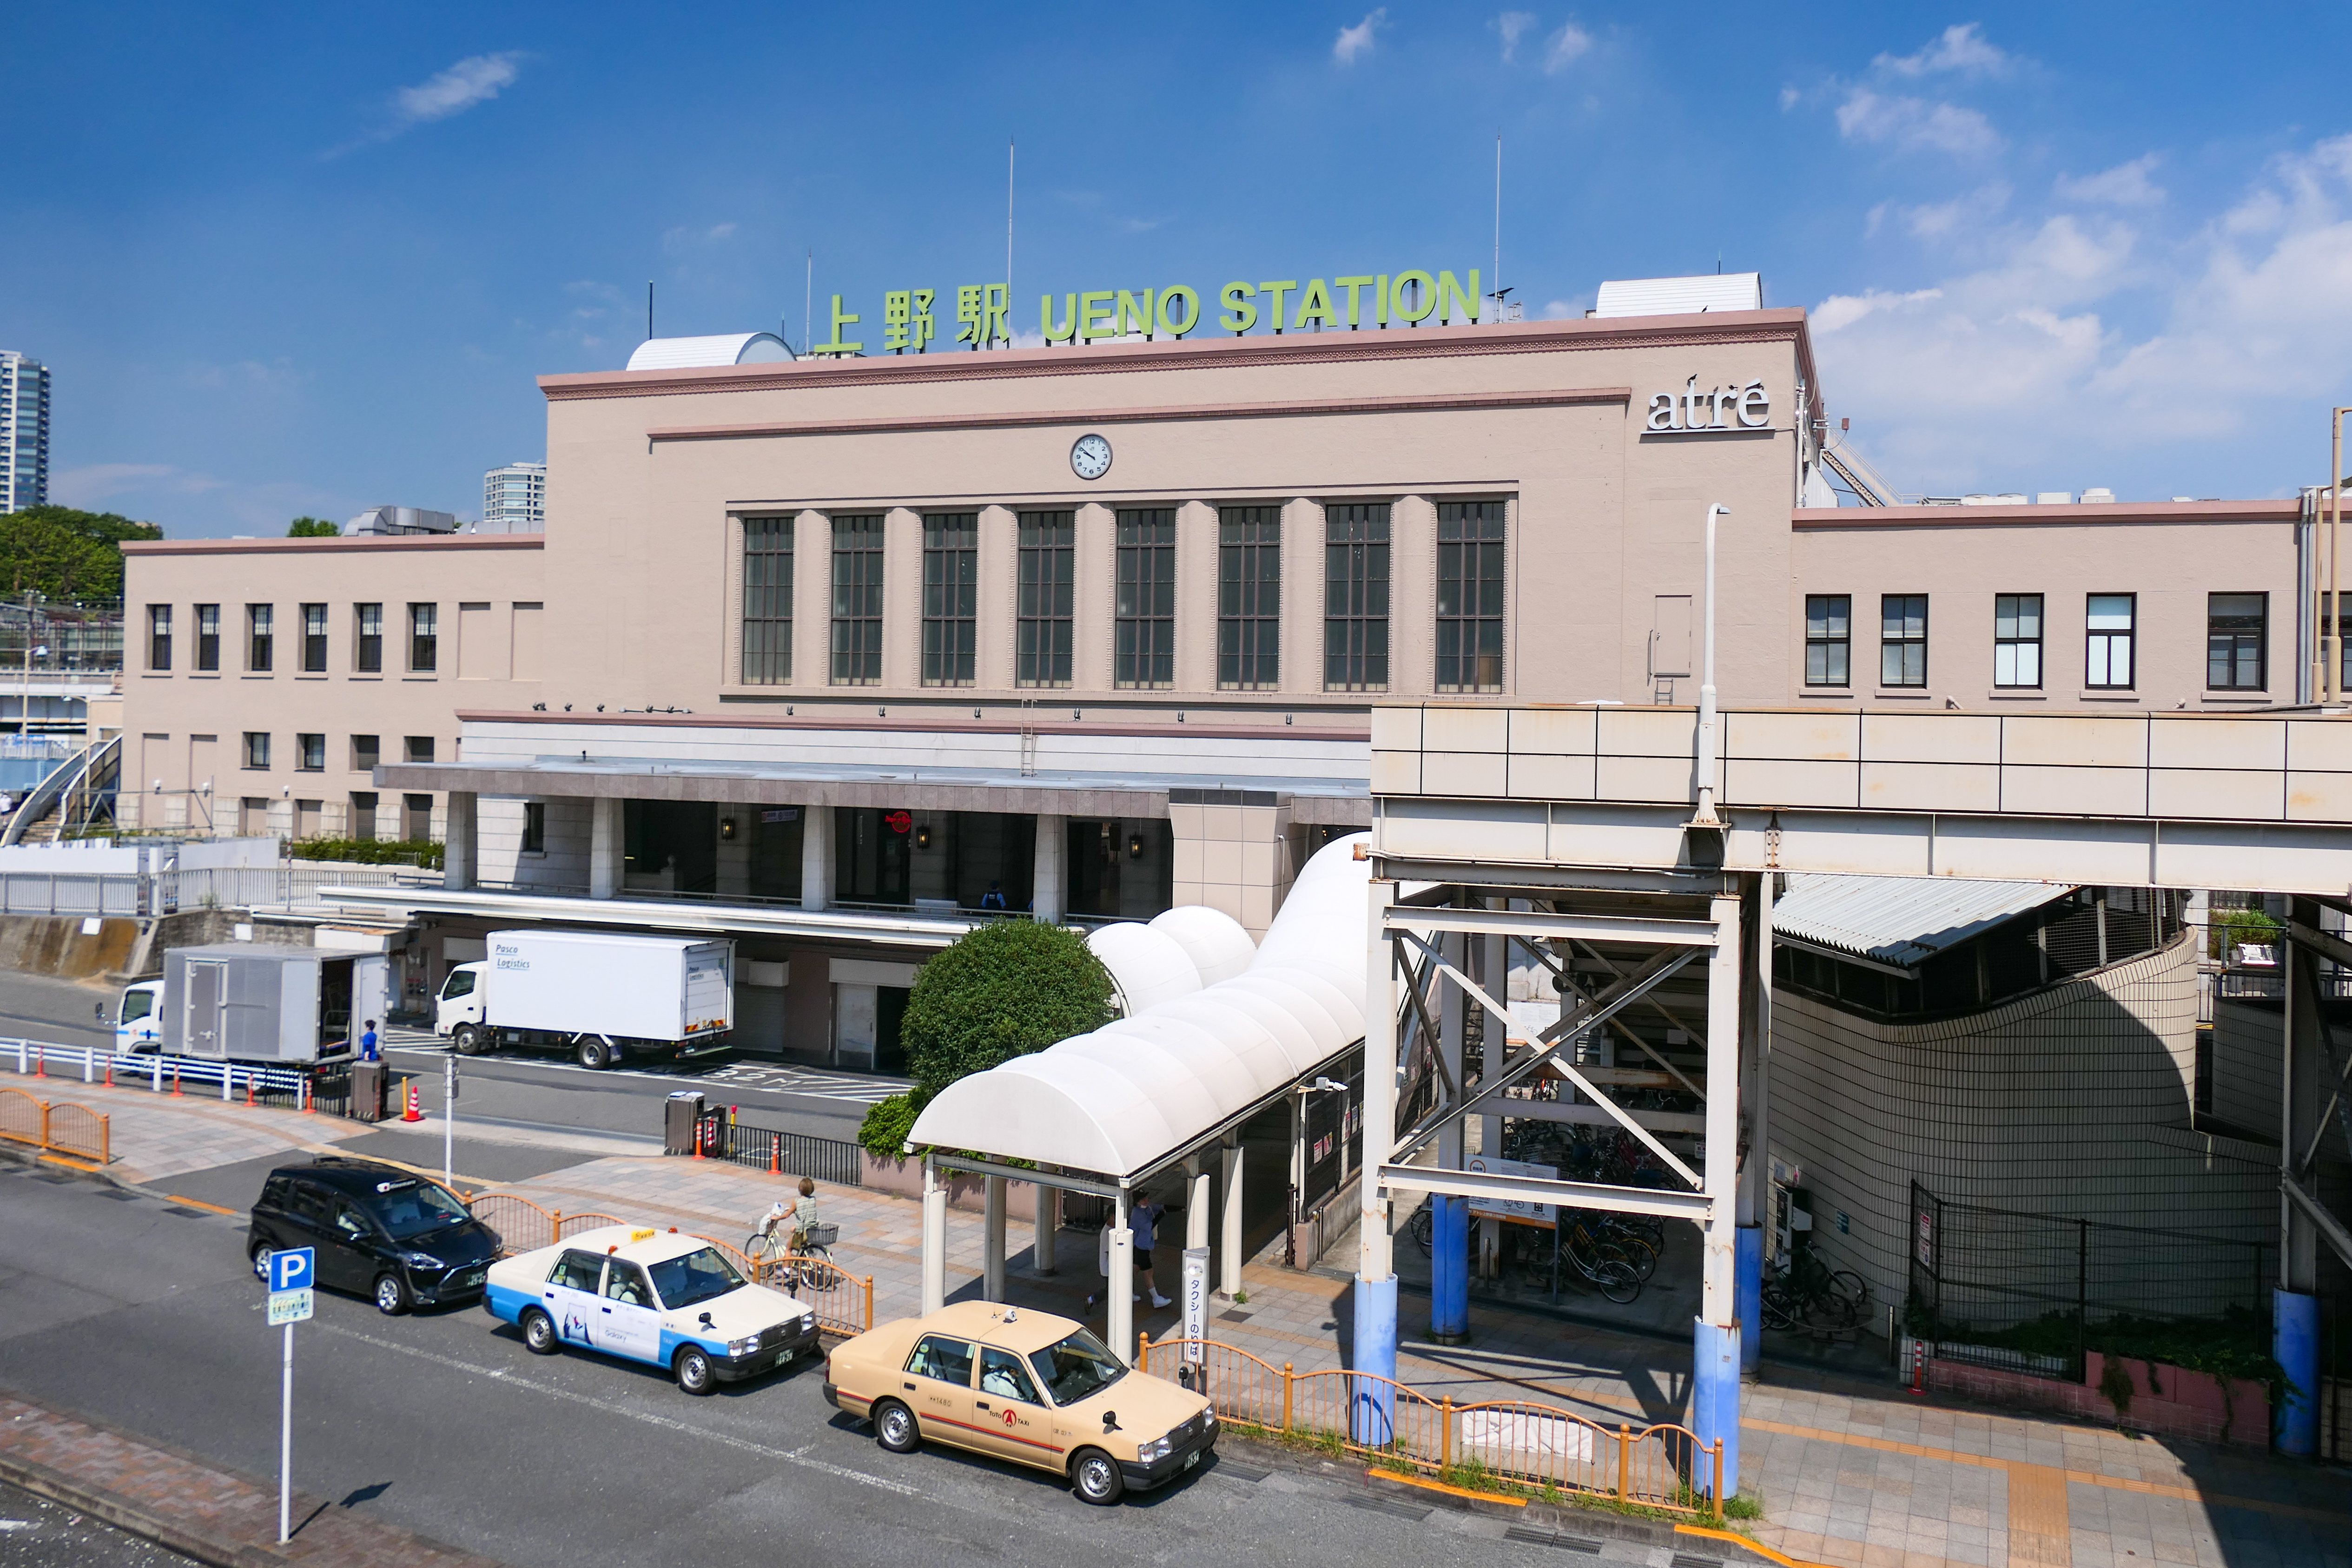 上野駅 - Wikipedia